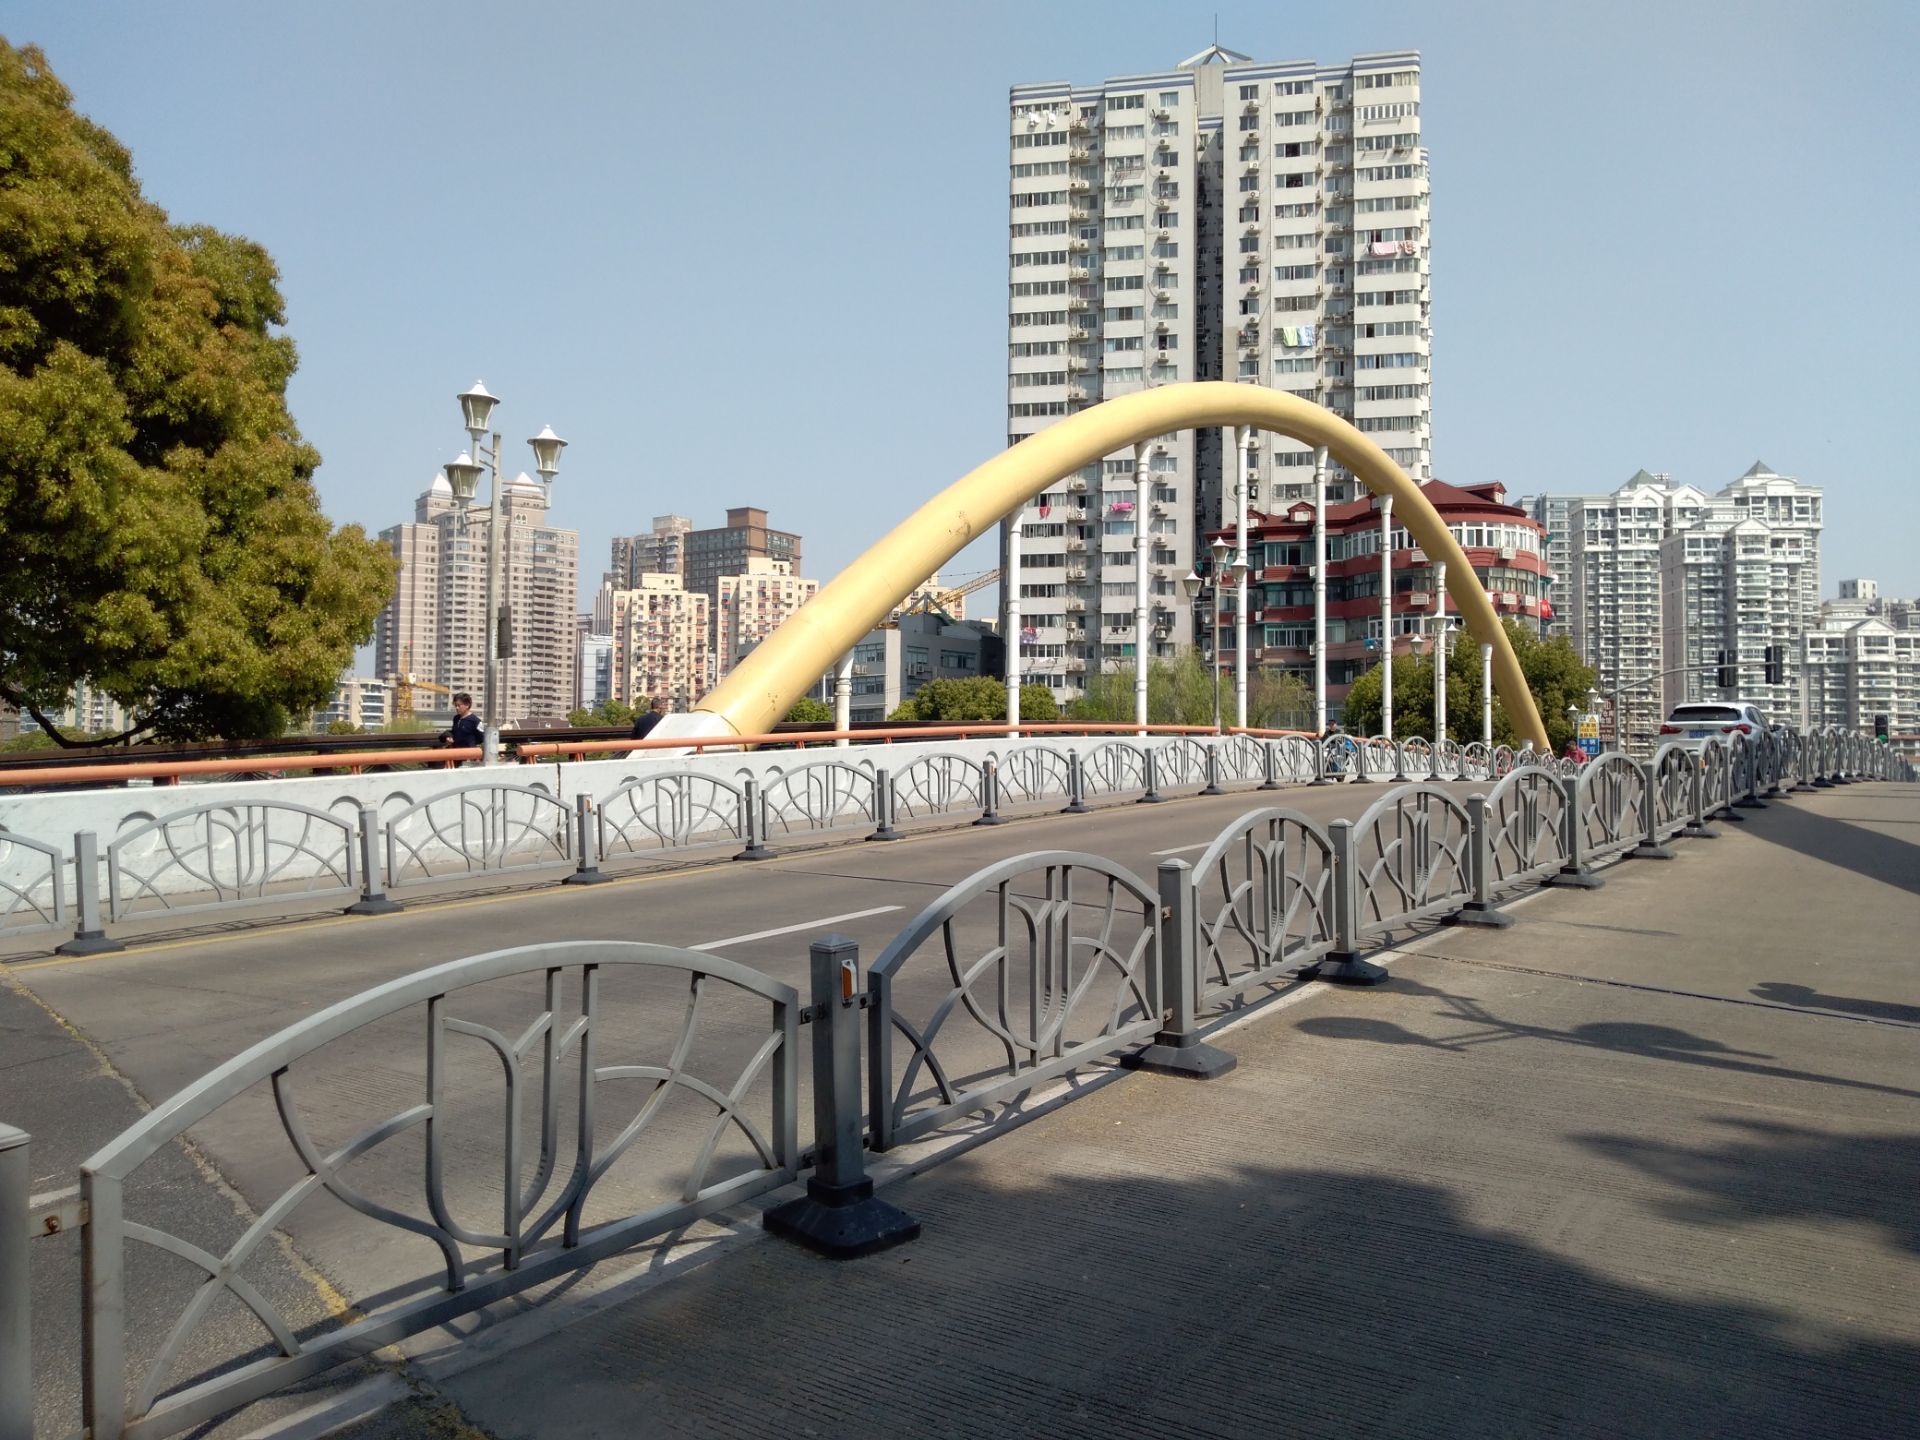 上海的乌镇路桥也是跨越苏州河的一座老桥早己拆除了现在看到的是一座